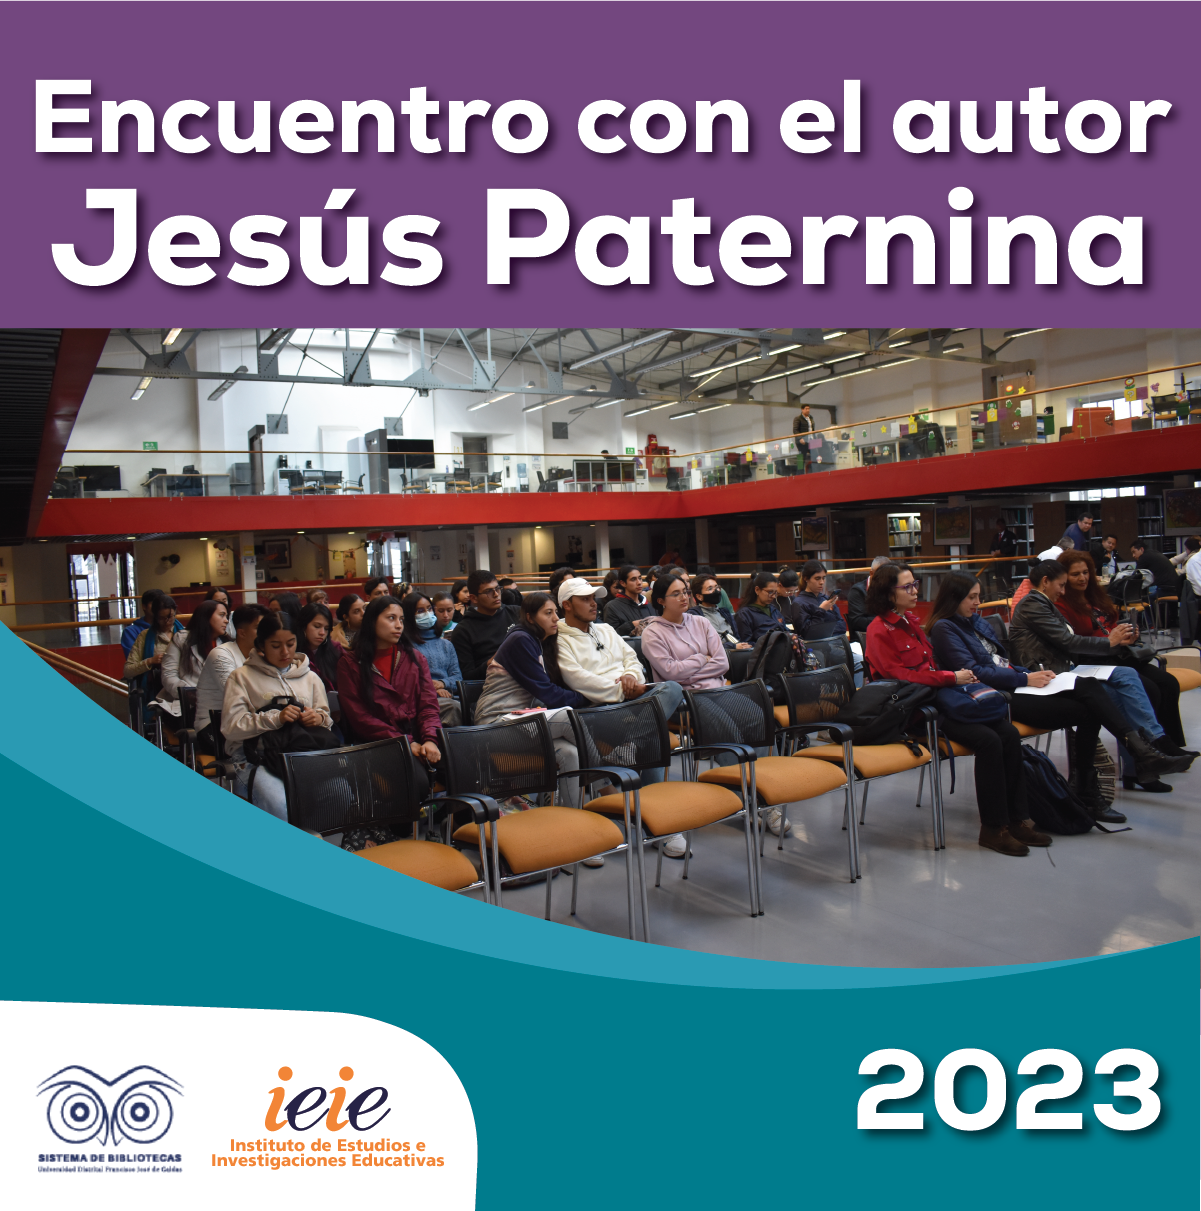 Imagen publicación Encuentro con el autor Jesús Paternina